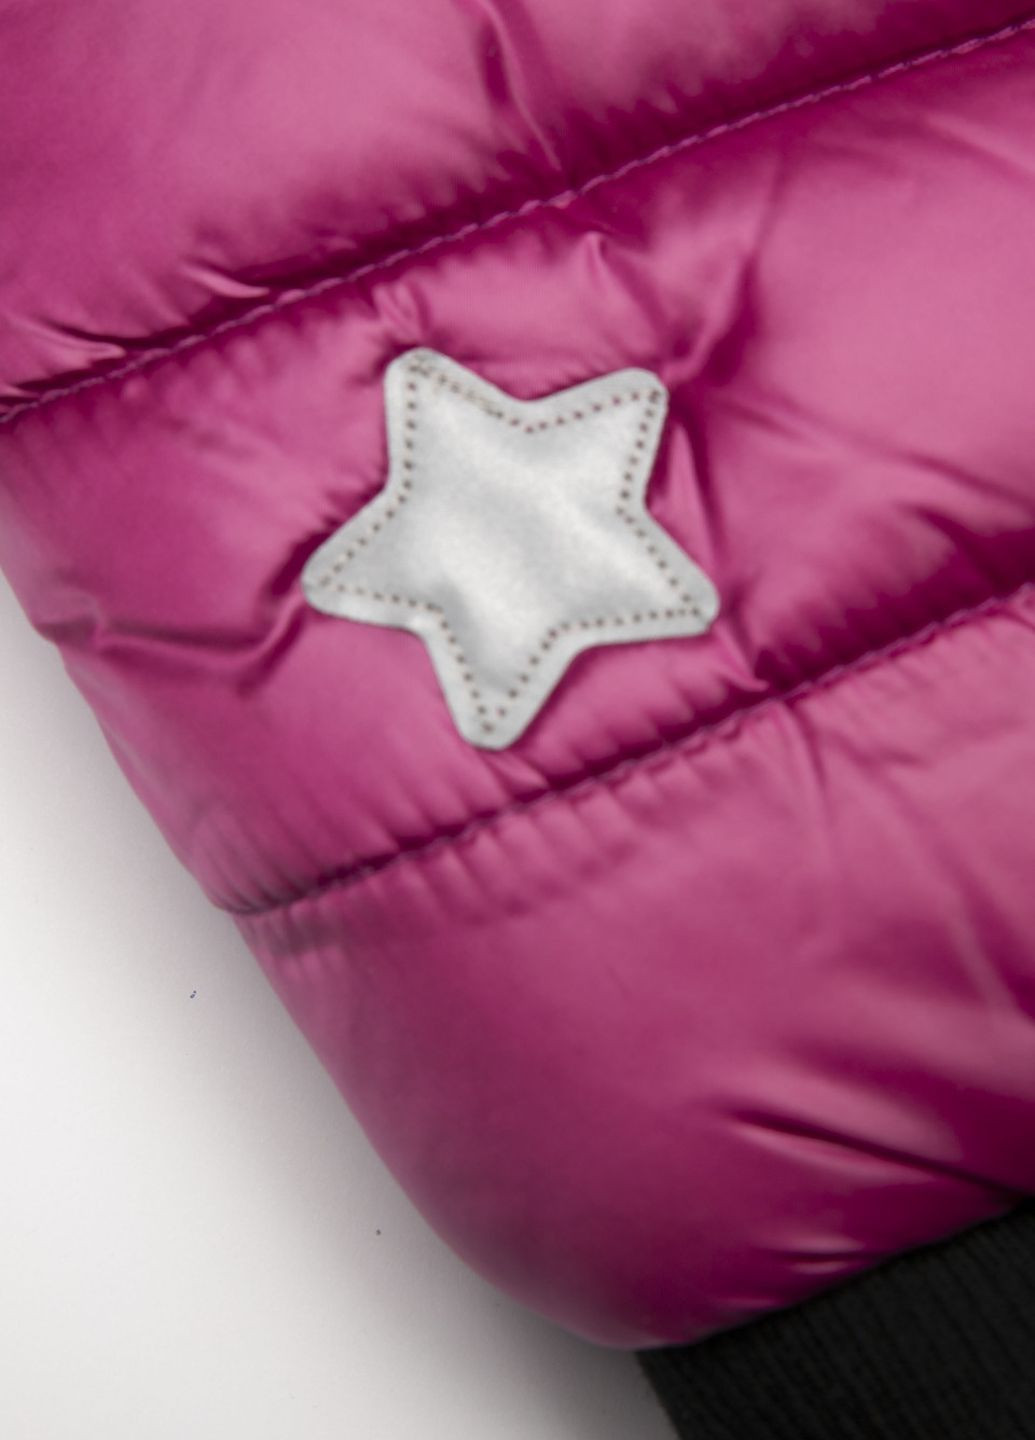 Фиолетовая зимняя пальто Coccodrillo